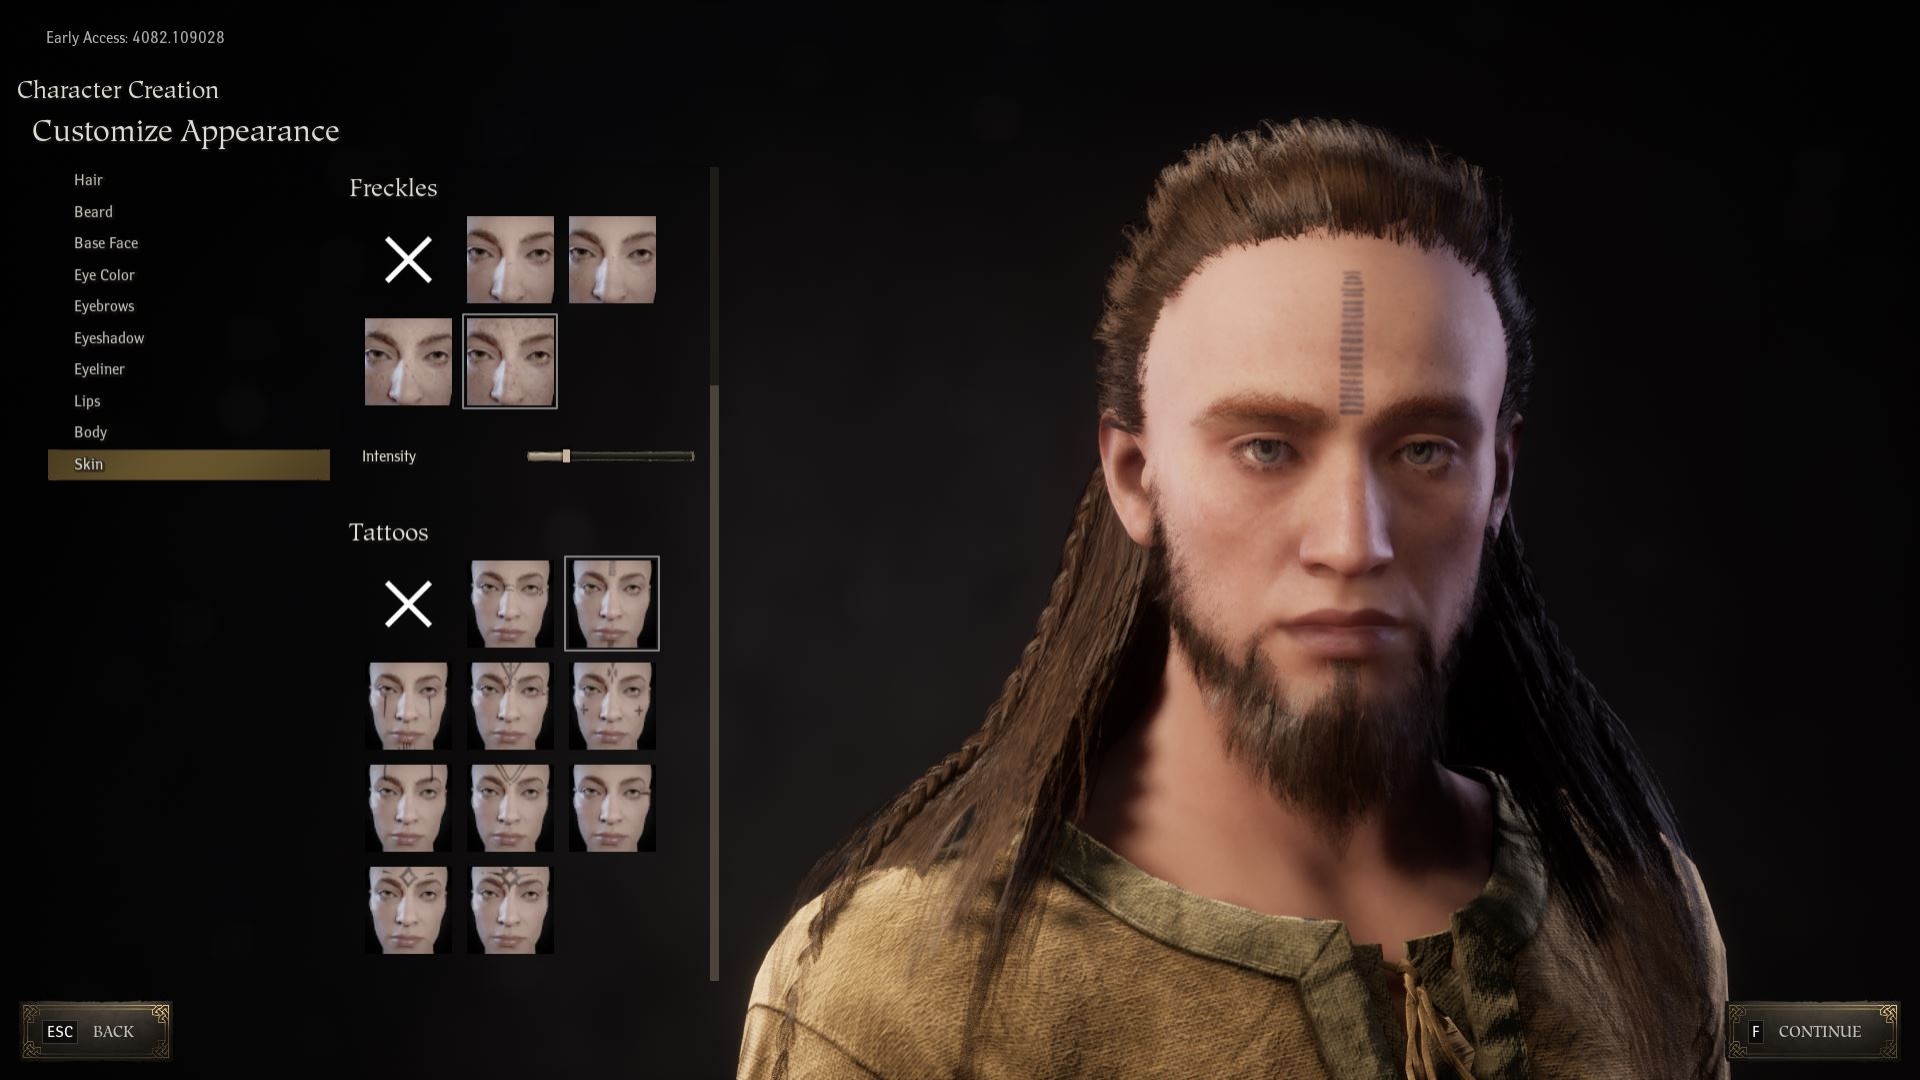 Pax Dei izlenimleri: Pax Dei'nin karakter yaratma ekranının, uzun saçlı ve yüzünde dövme olan sakallı bir erkek karakteri gösteren ekran görüntüsü.